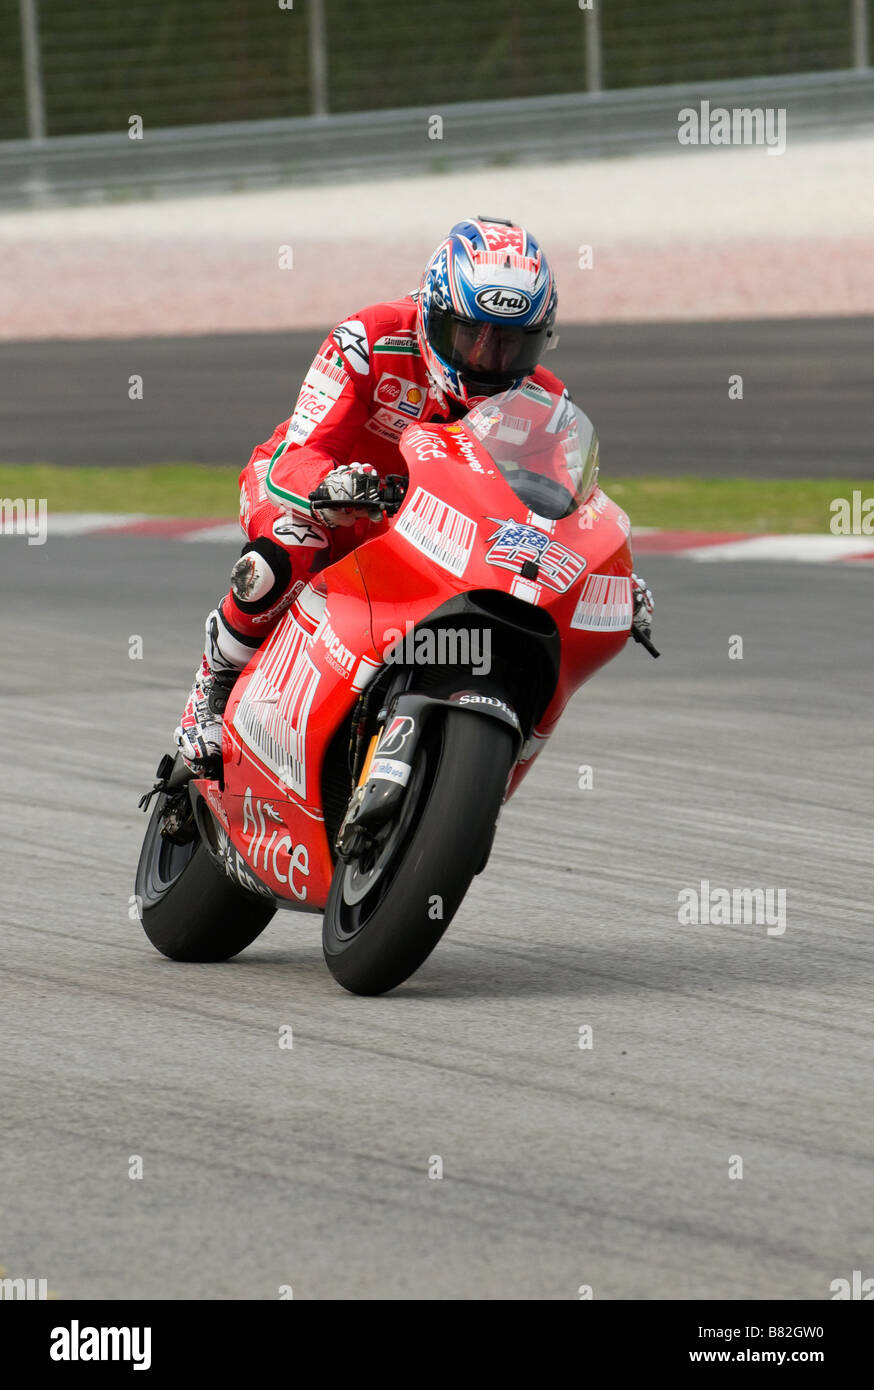 Amerikanische Nicky Hayden von Ducati Marlboro Team beim offiziellen MotoGP Test in Sepang Malaysia am 7. Februar 2009. Stockfoto